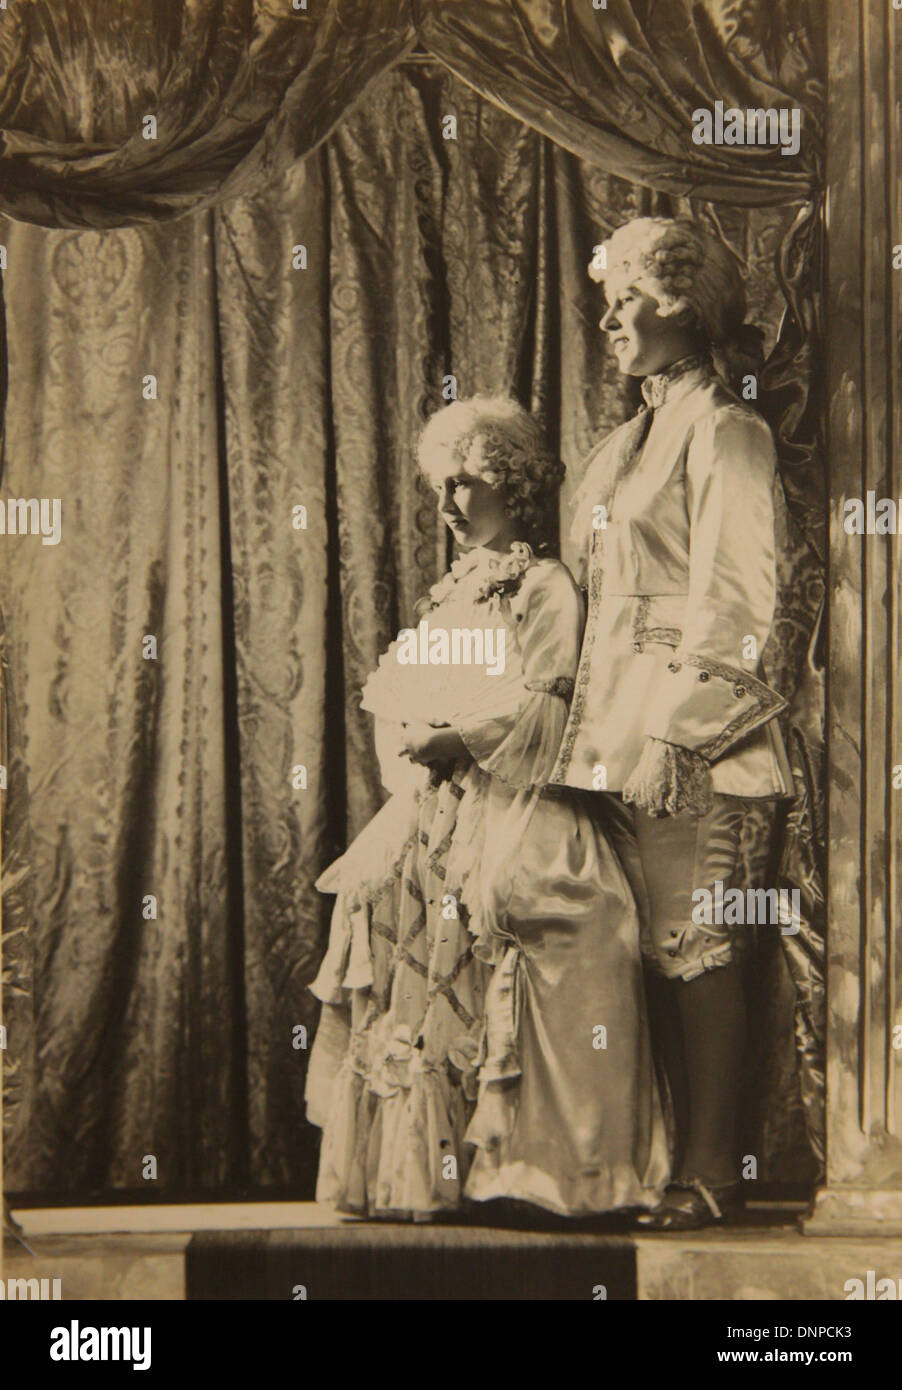 Recueillir des photographie de la princesse Margaret (à gauche) et de la princesse Elizabeth (à droite) dans la pièce de Cendrillon, 1941 Banque D'Images